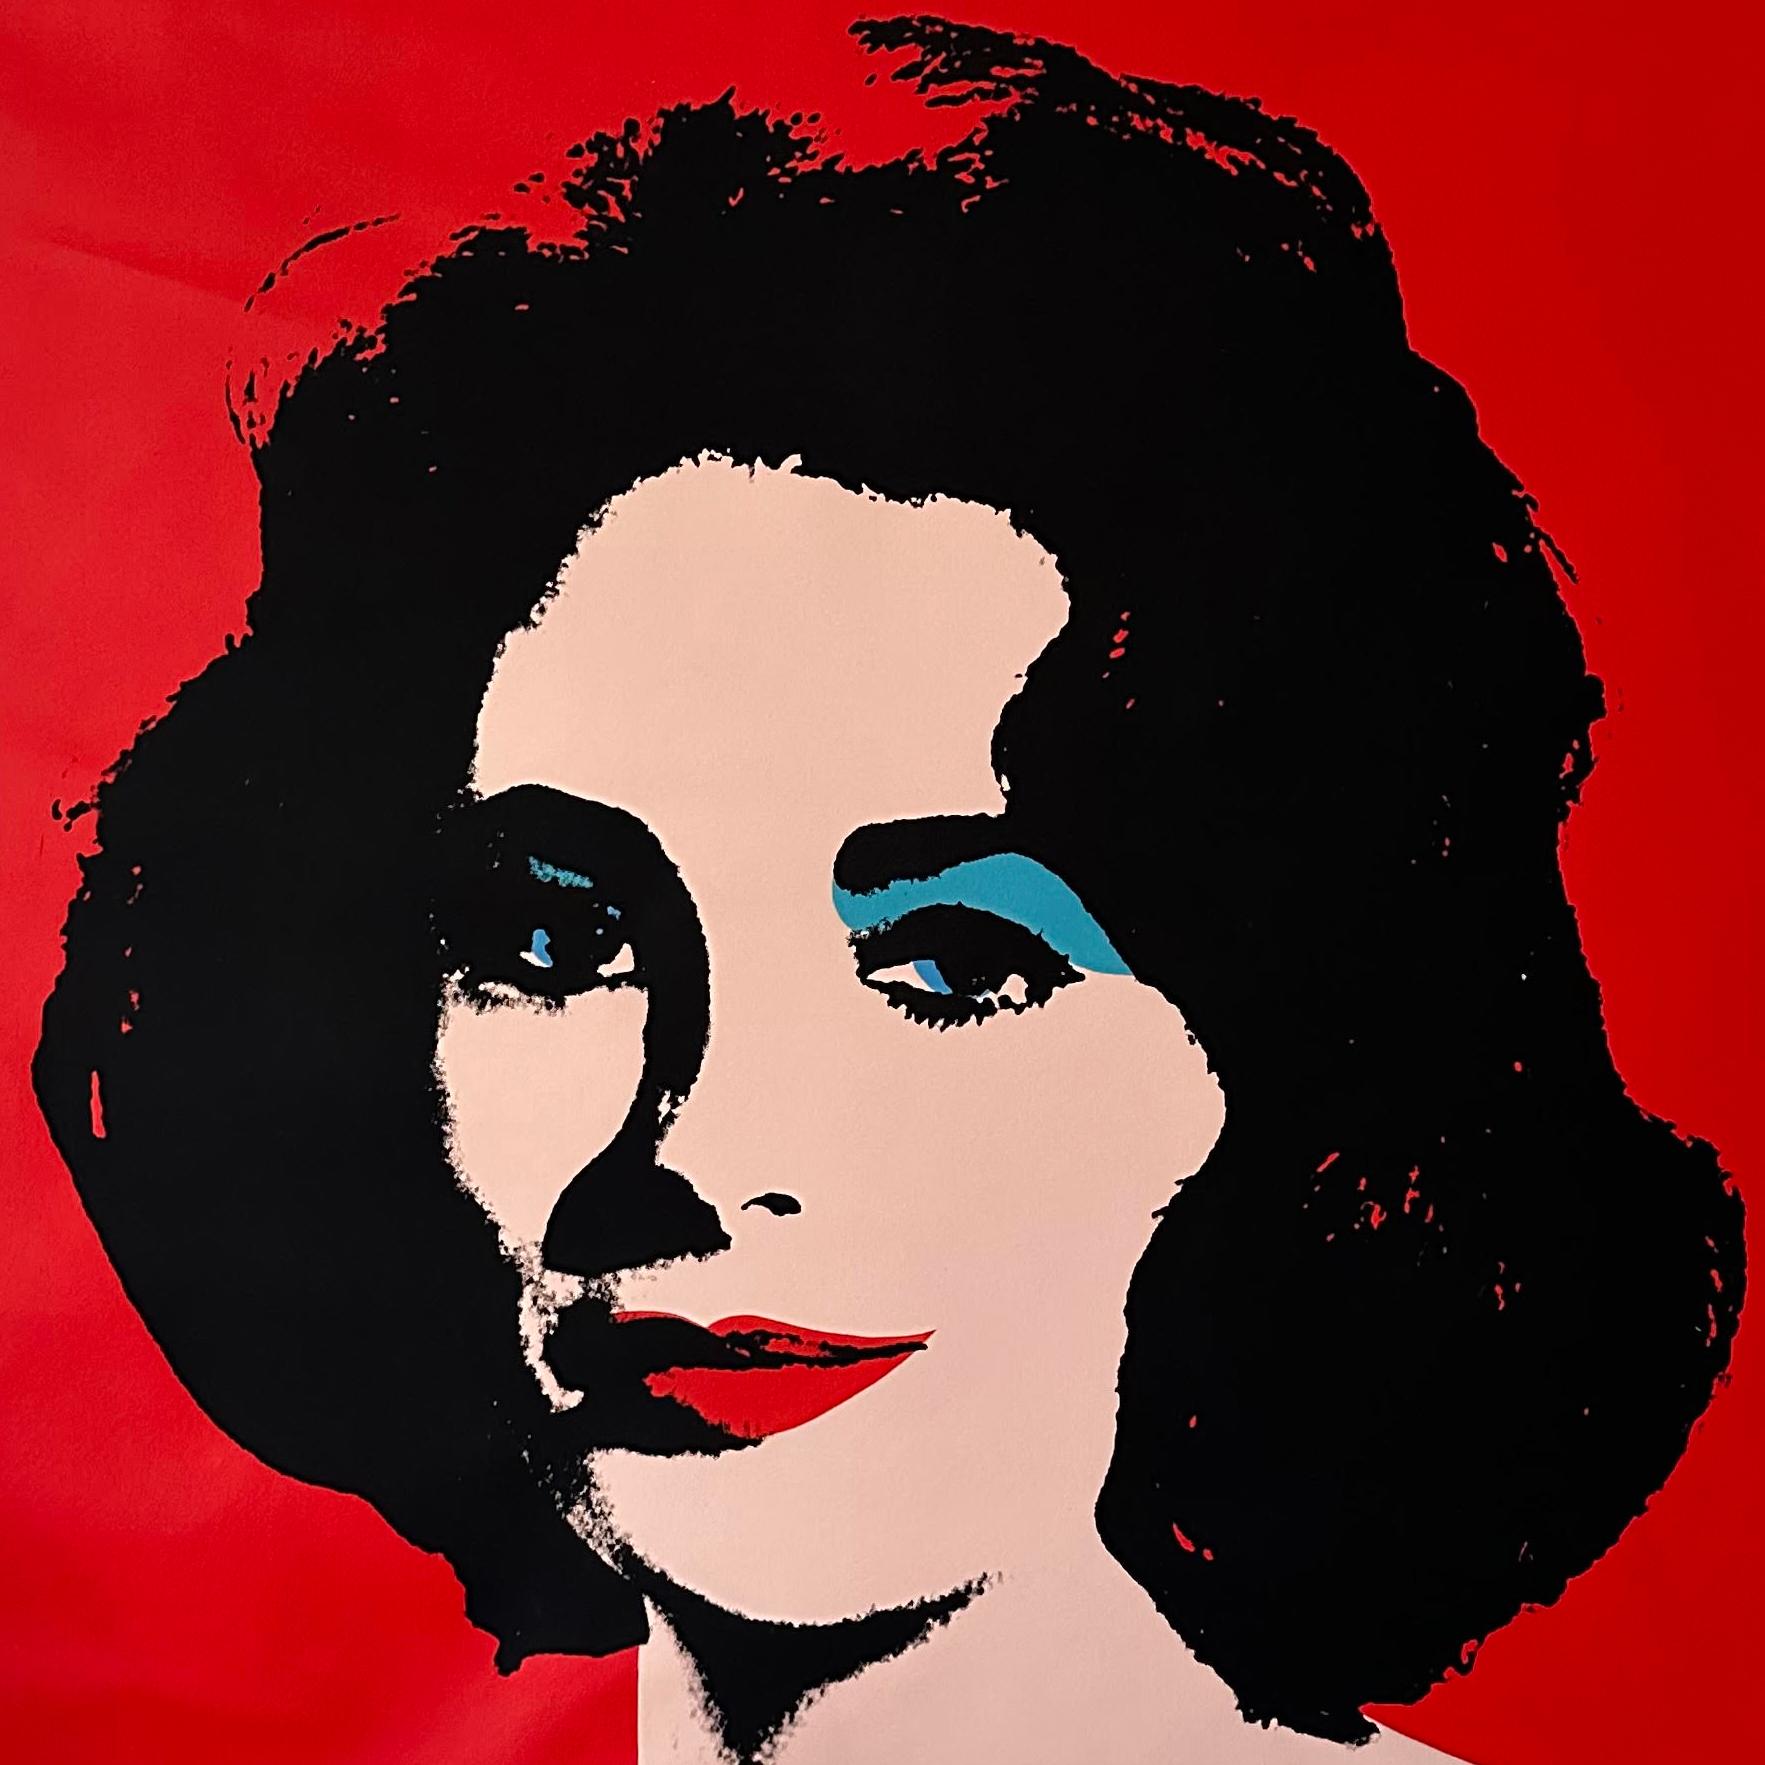 Denied Warhol Red Liz Gemälde auf Leinwand von Charles Lutz
Siebdruck und Acryl auf Leinwand mit dem Stempel "Denied" des Andy Warhol Art Authentication Board. 
40 x 40" Zoll 
2008

Lutz' Serie "Warhol Denied" aus dem Jahr 2007 erregte